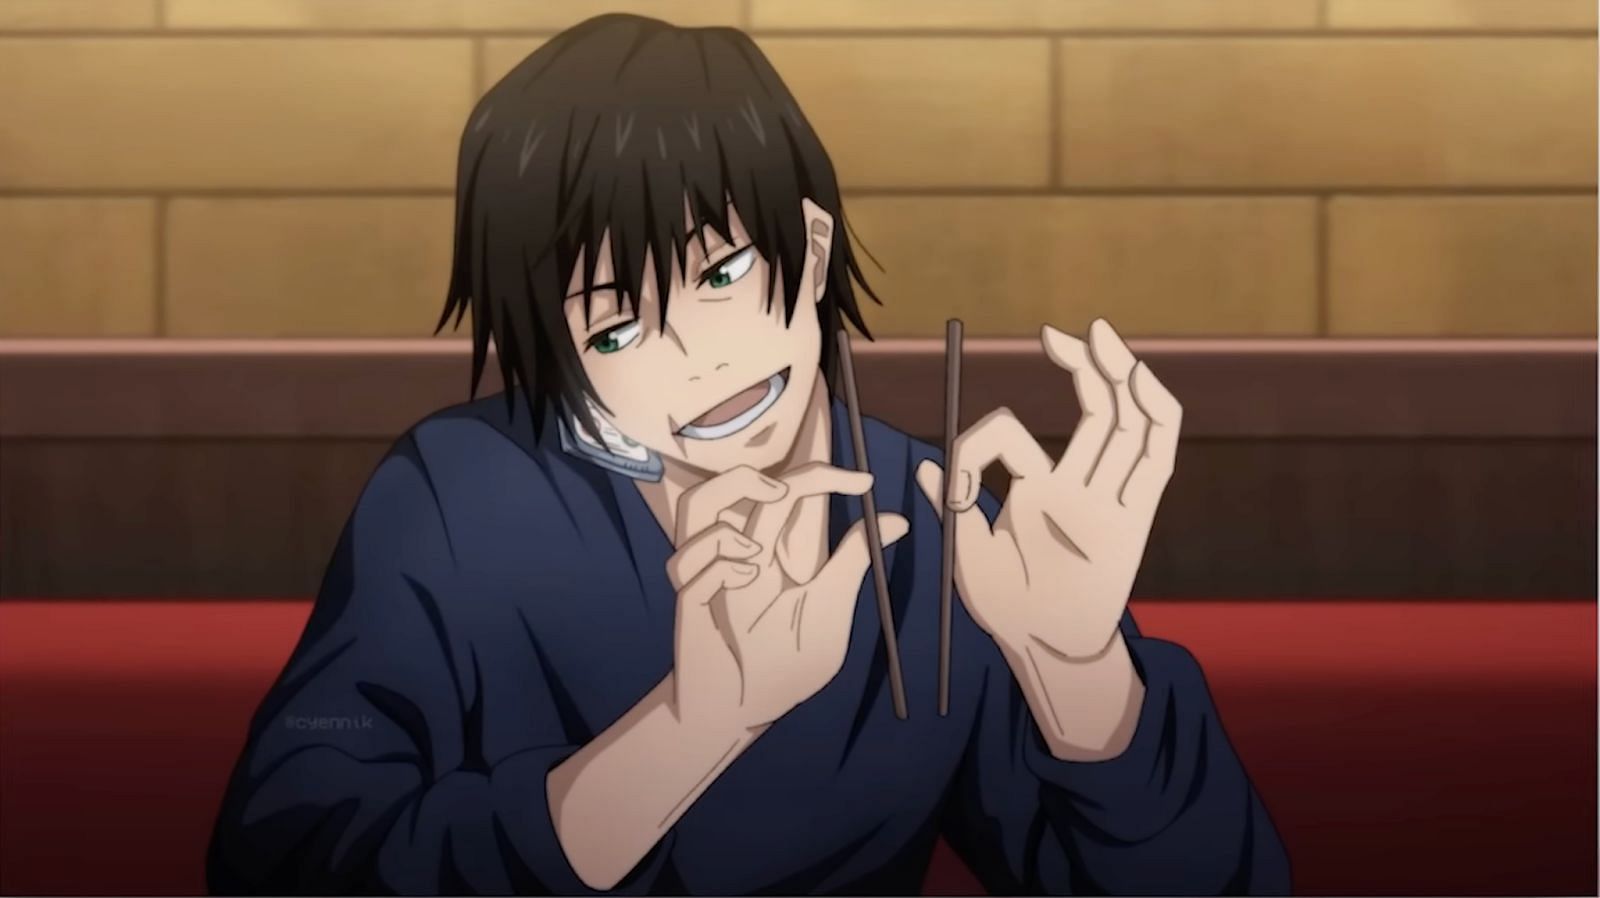 Mùa 2 của anime Jujutsu Kaisen chính thức rò rỉ những hình ảnh đầu tiên của  sát thủ Toji Fushiguro